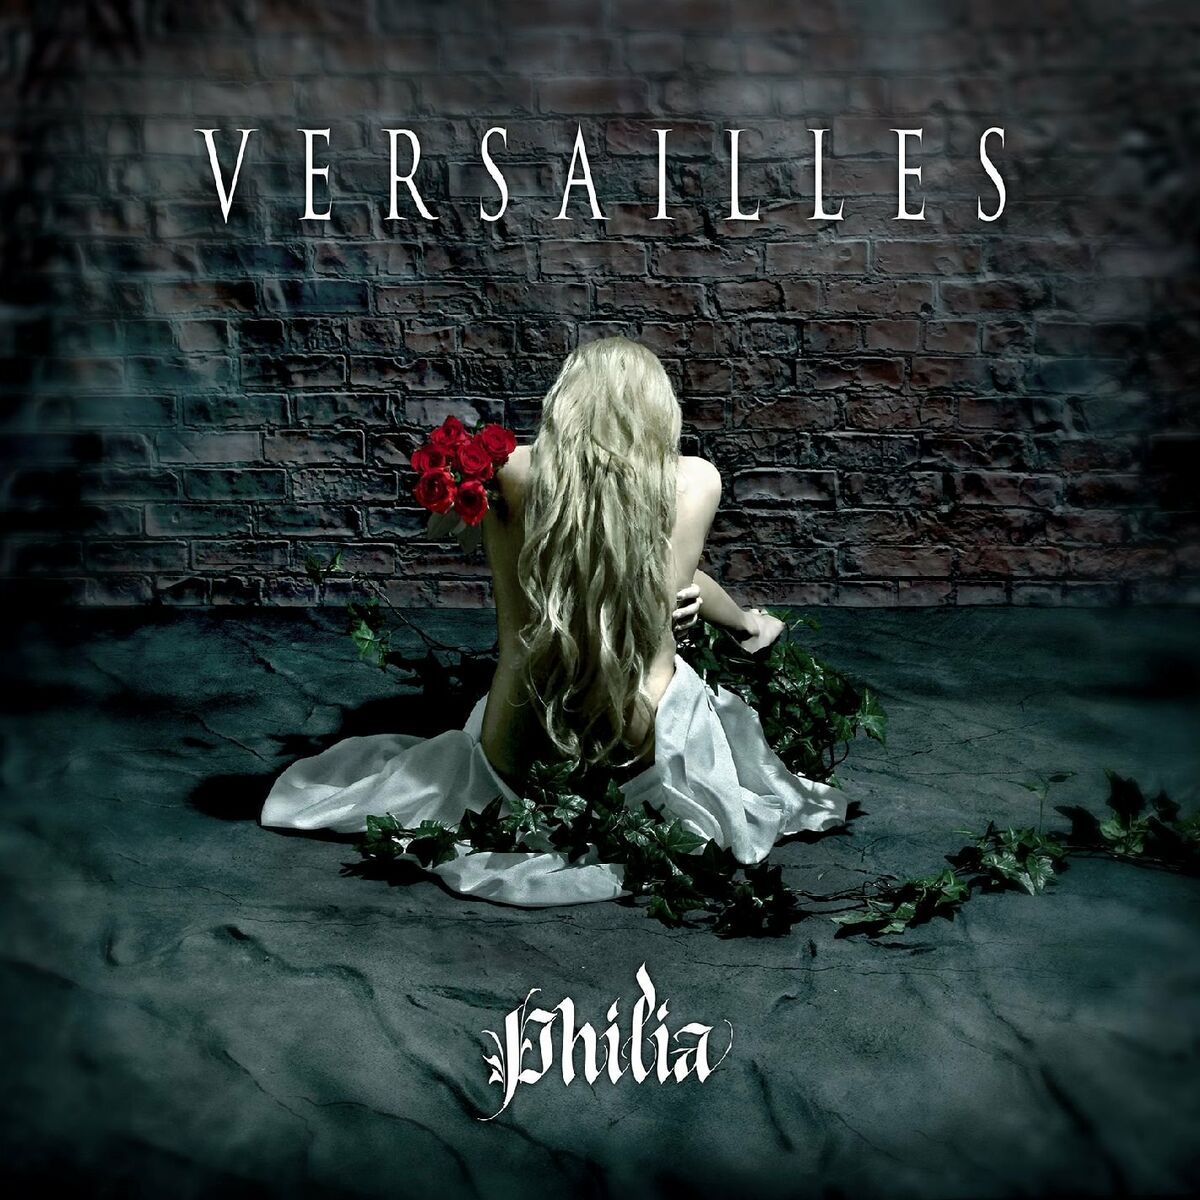 Versailles: albums, songs, playlists | Listen on Deezer